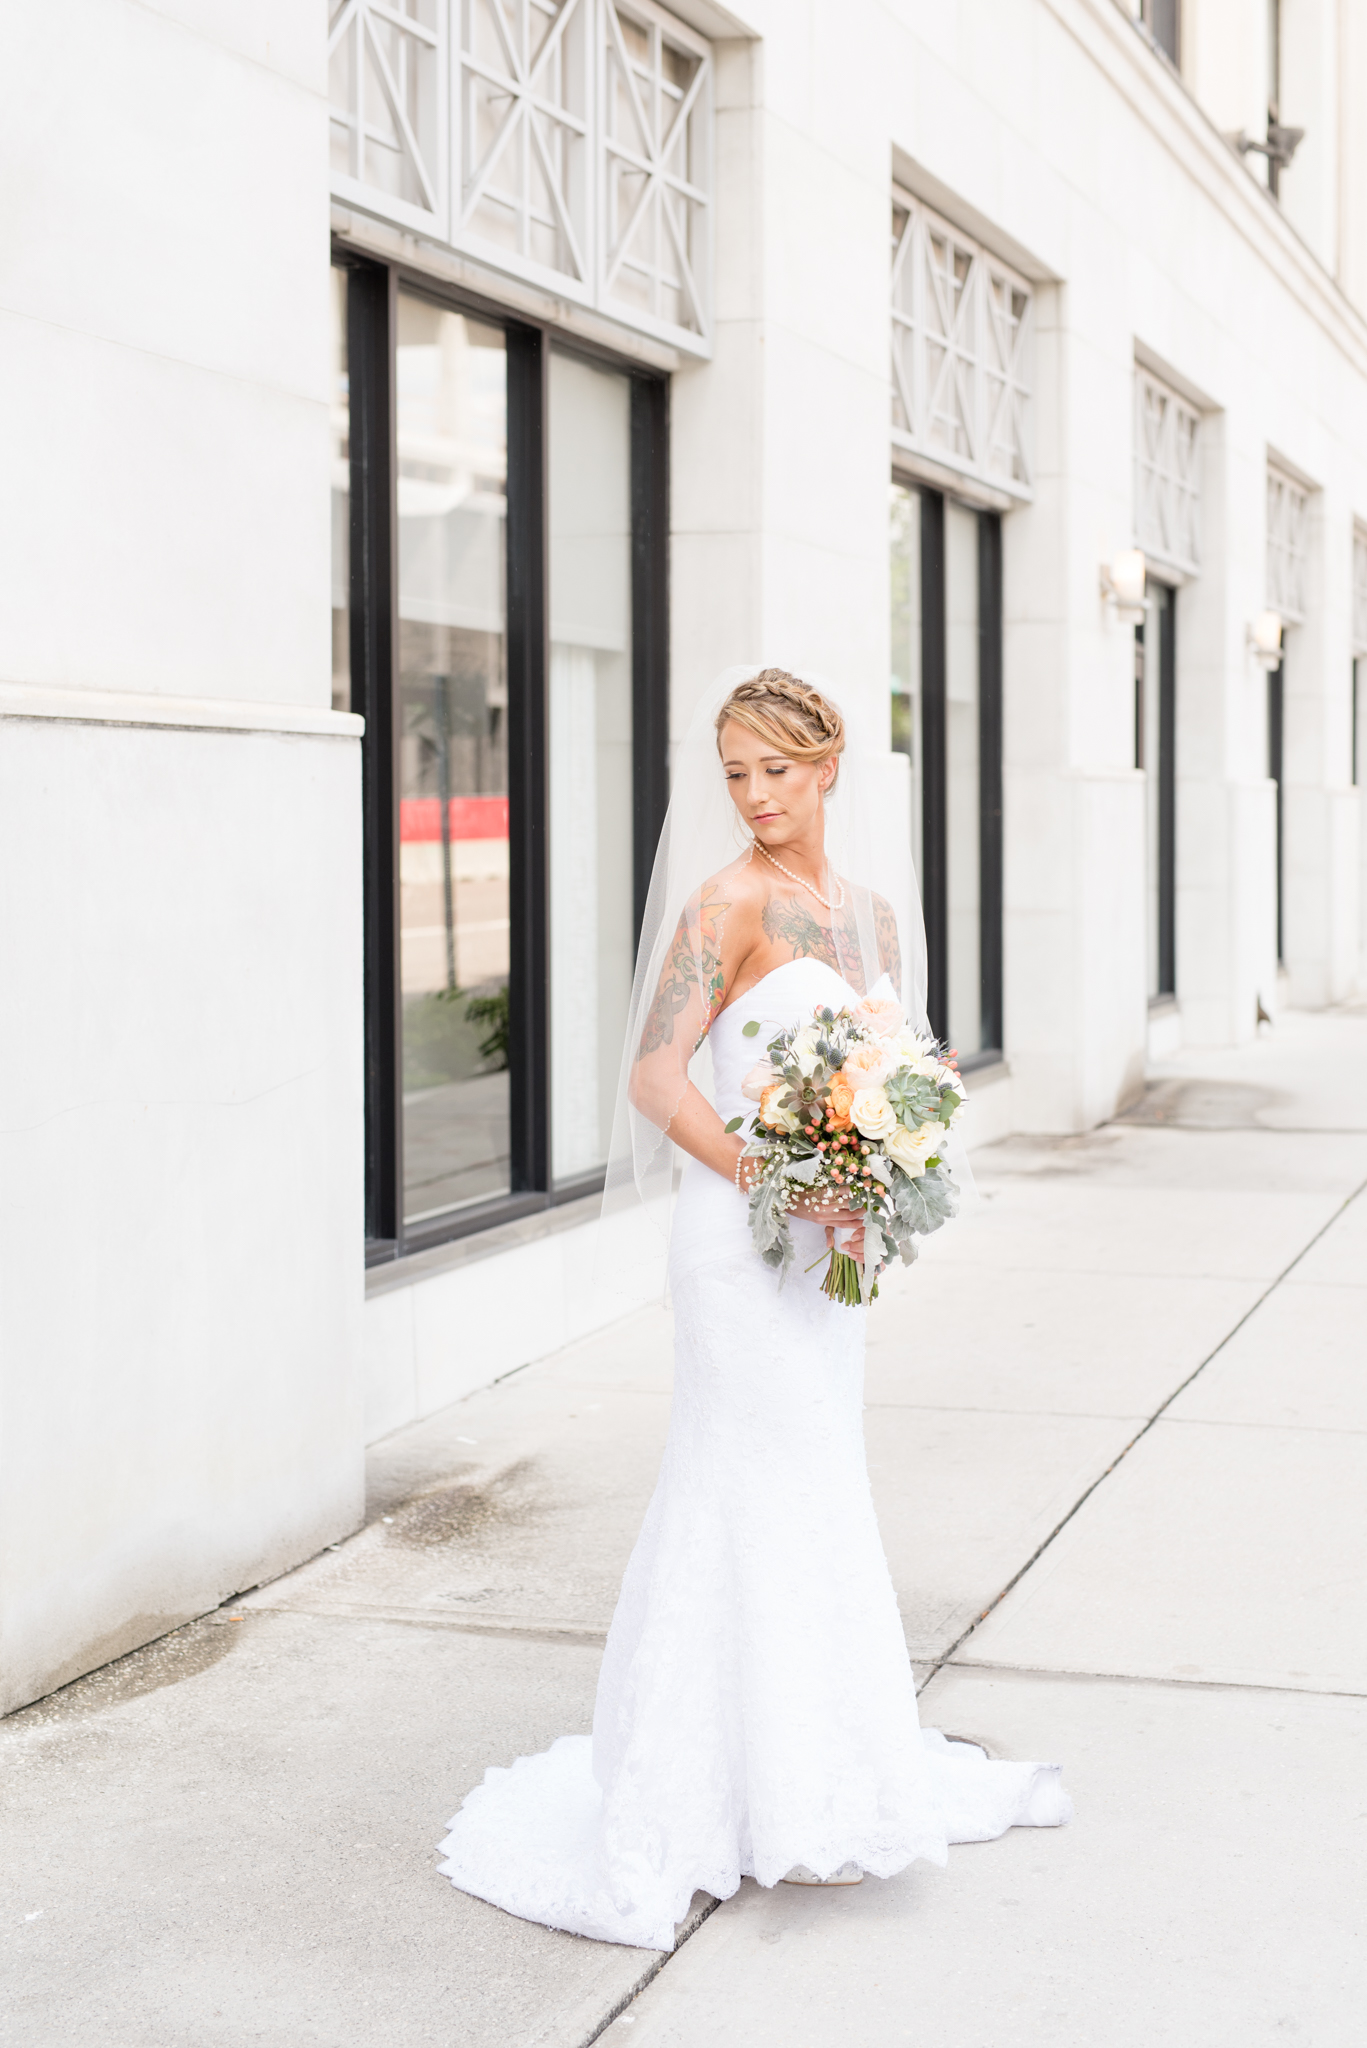 Bride looks over shoulder on sidewalk.